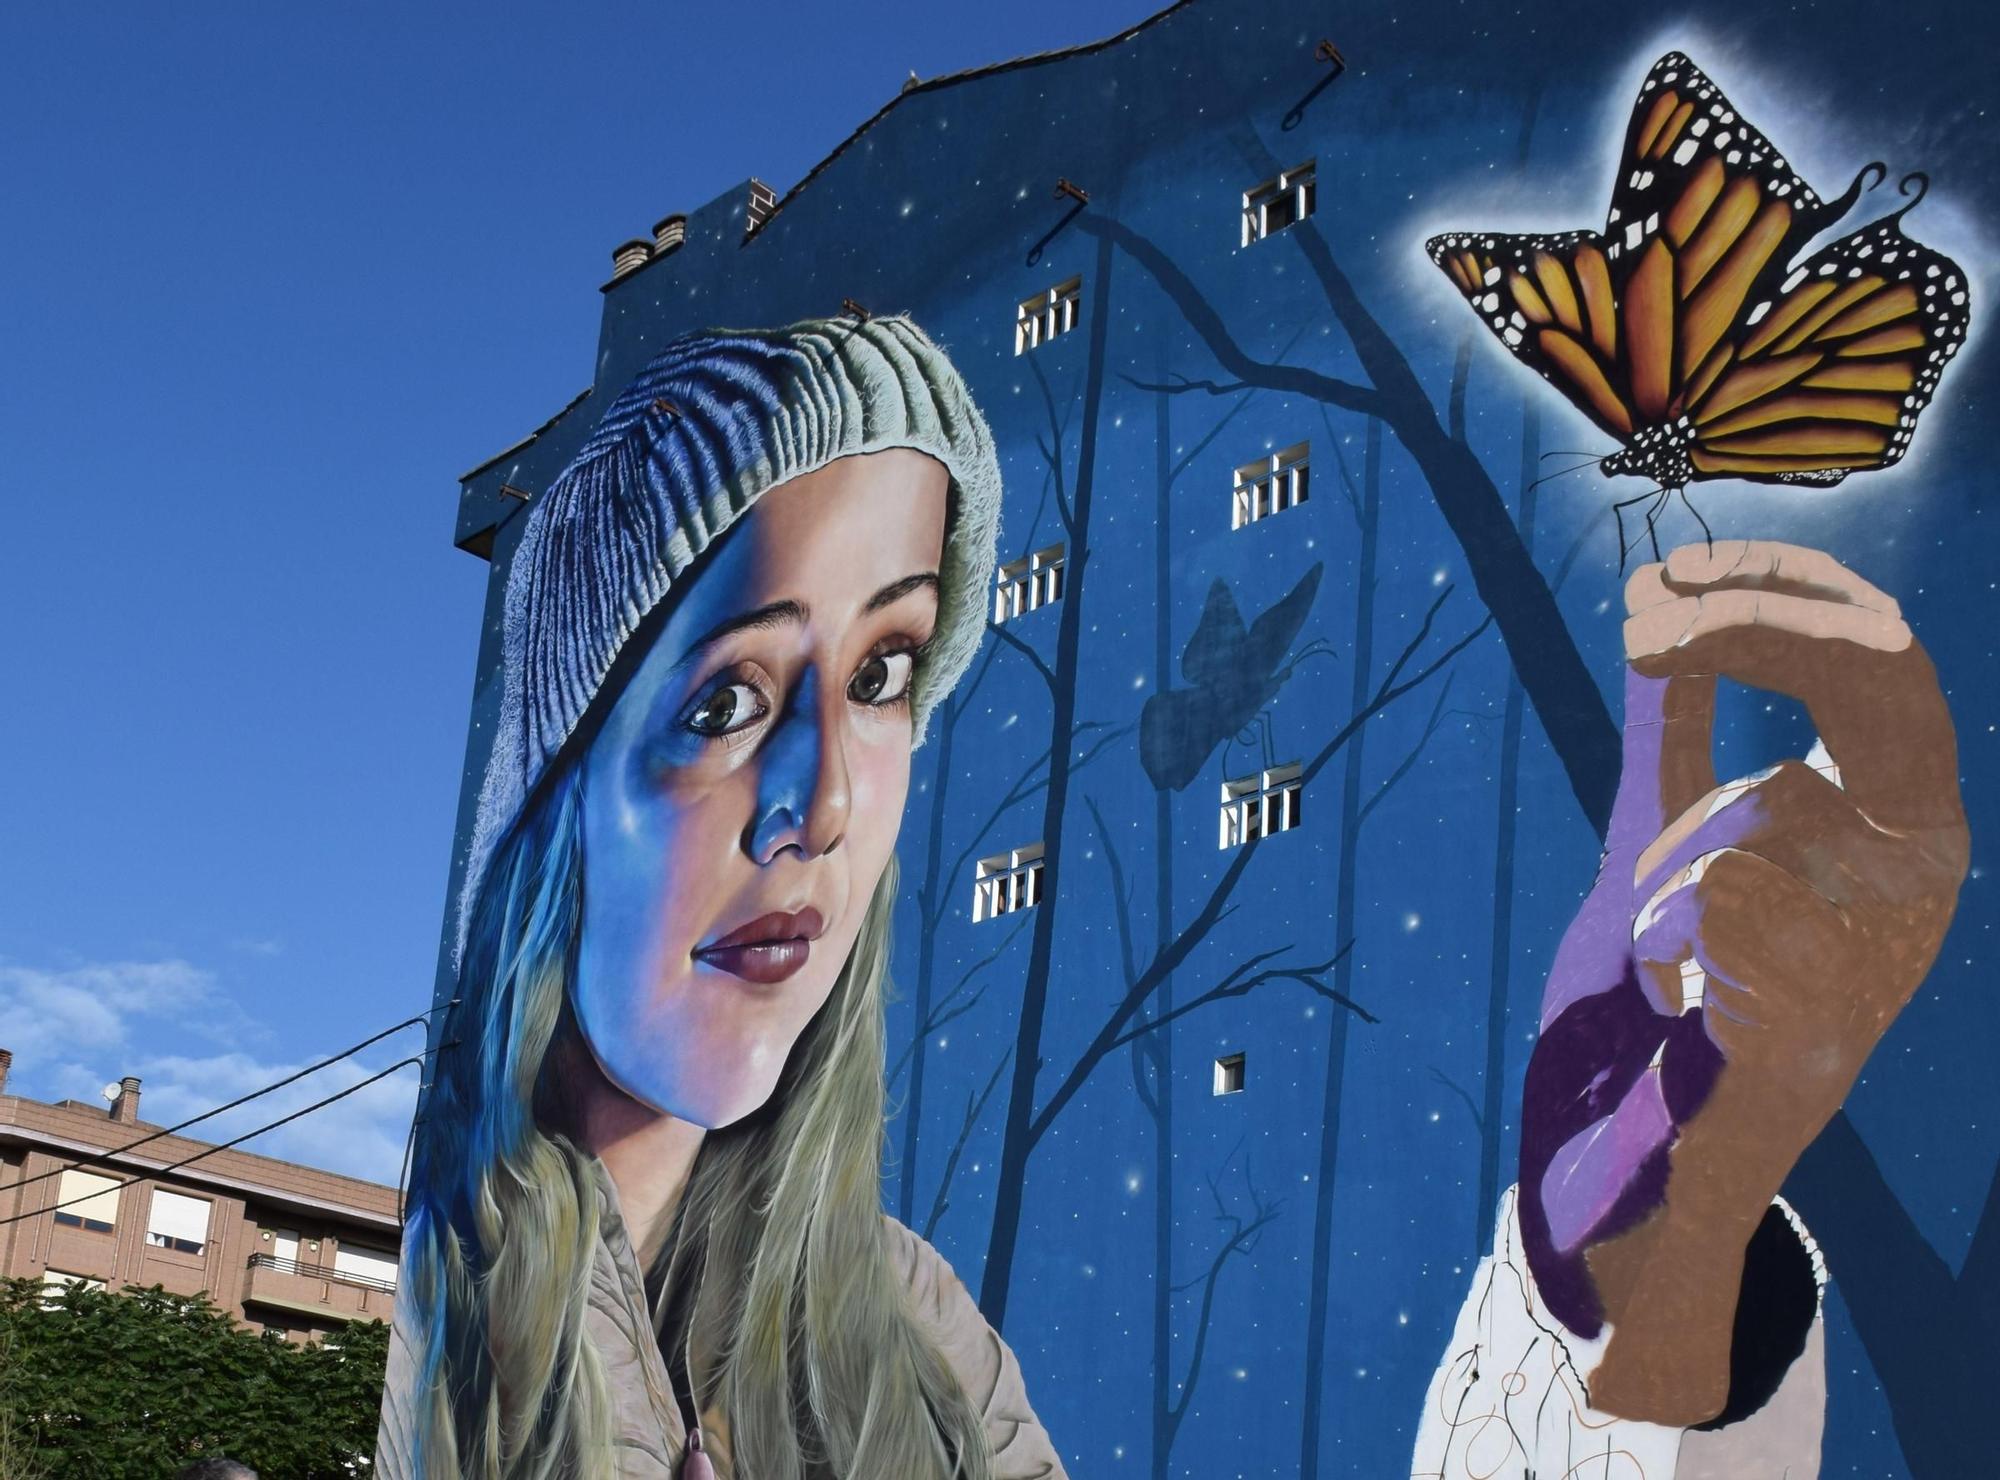 Diez grafitis en un minuto: los murales gigantes de Siero, de un vistazo